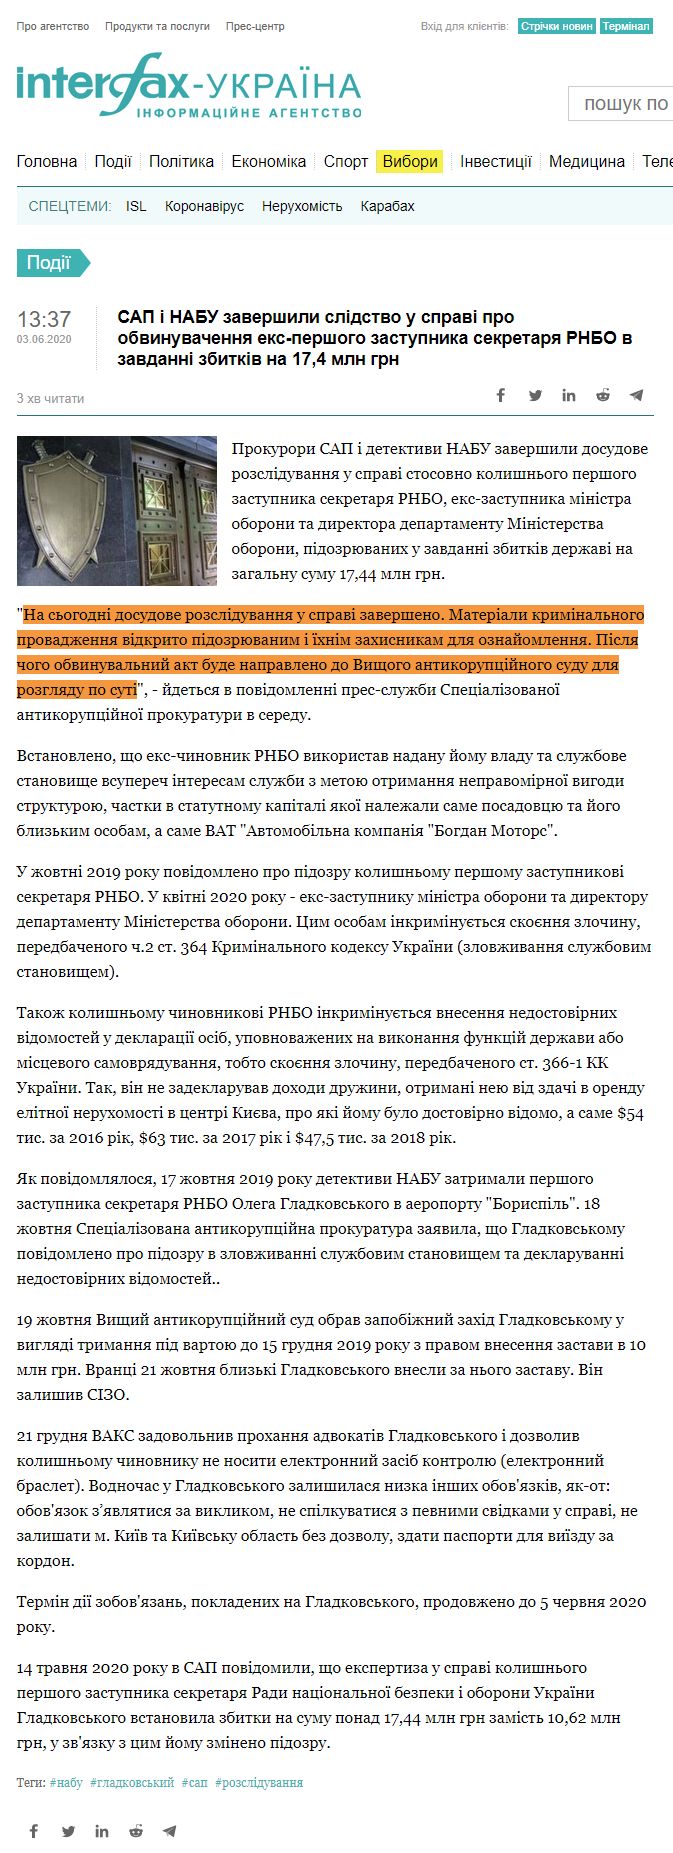 https://ua.interfax.com.ua/news/general/666591.html